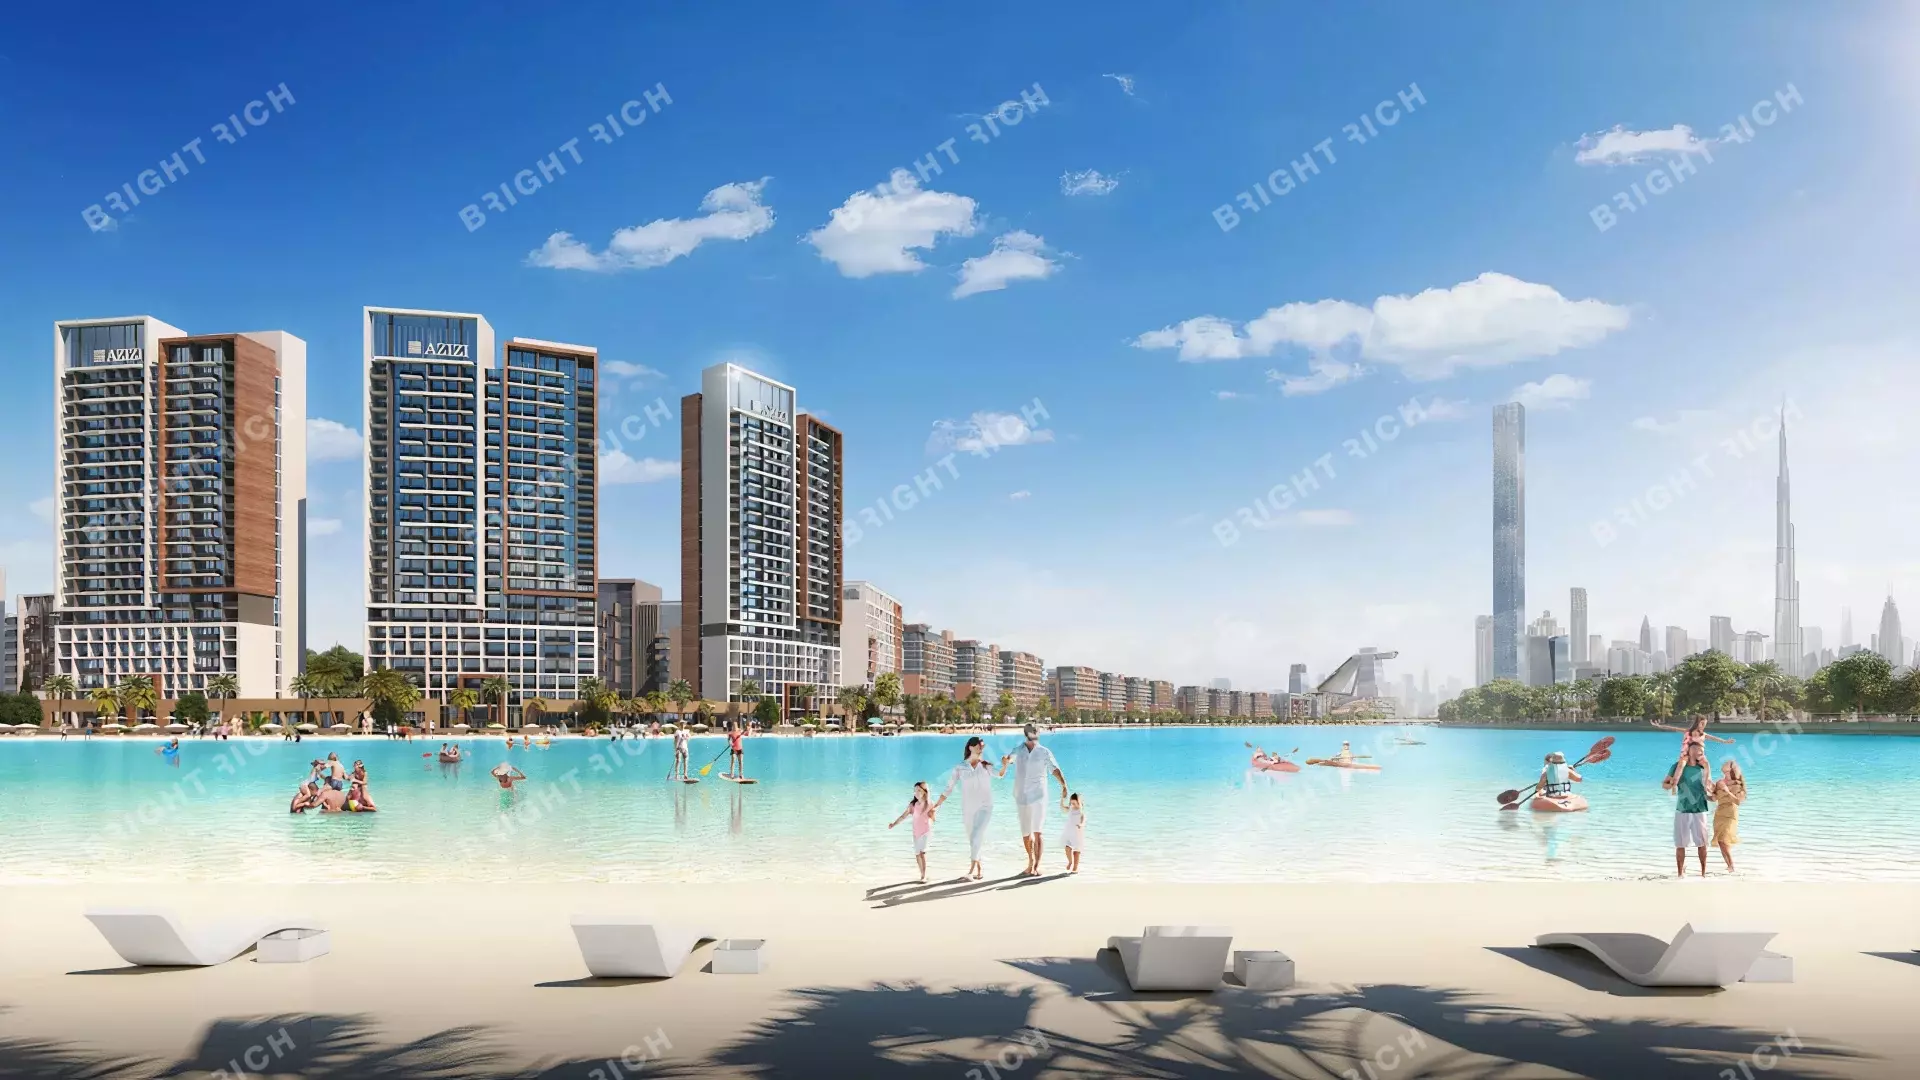 Azizi Riviera Building 63, apart complex in Dubai - 1